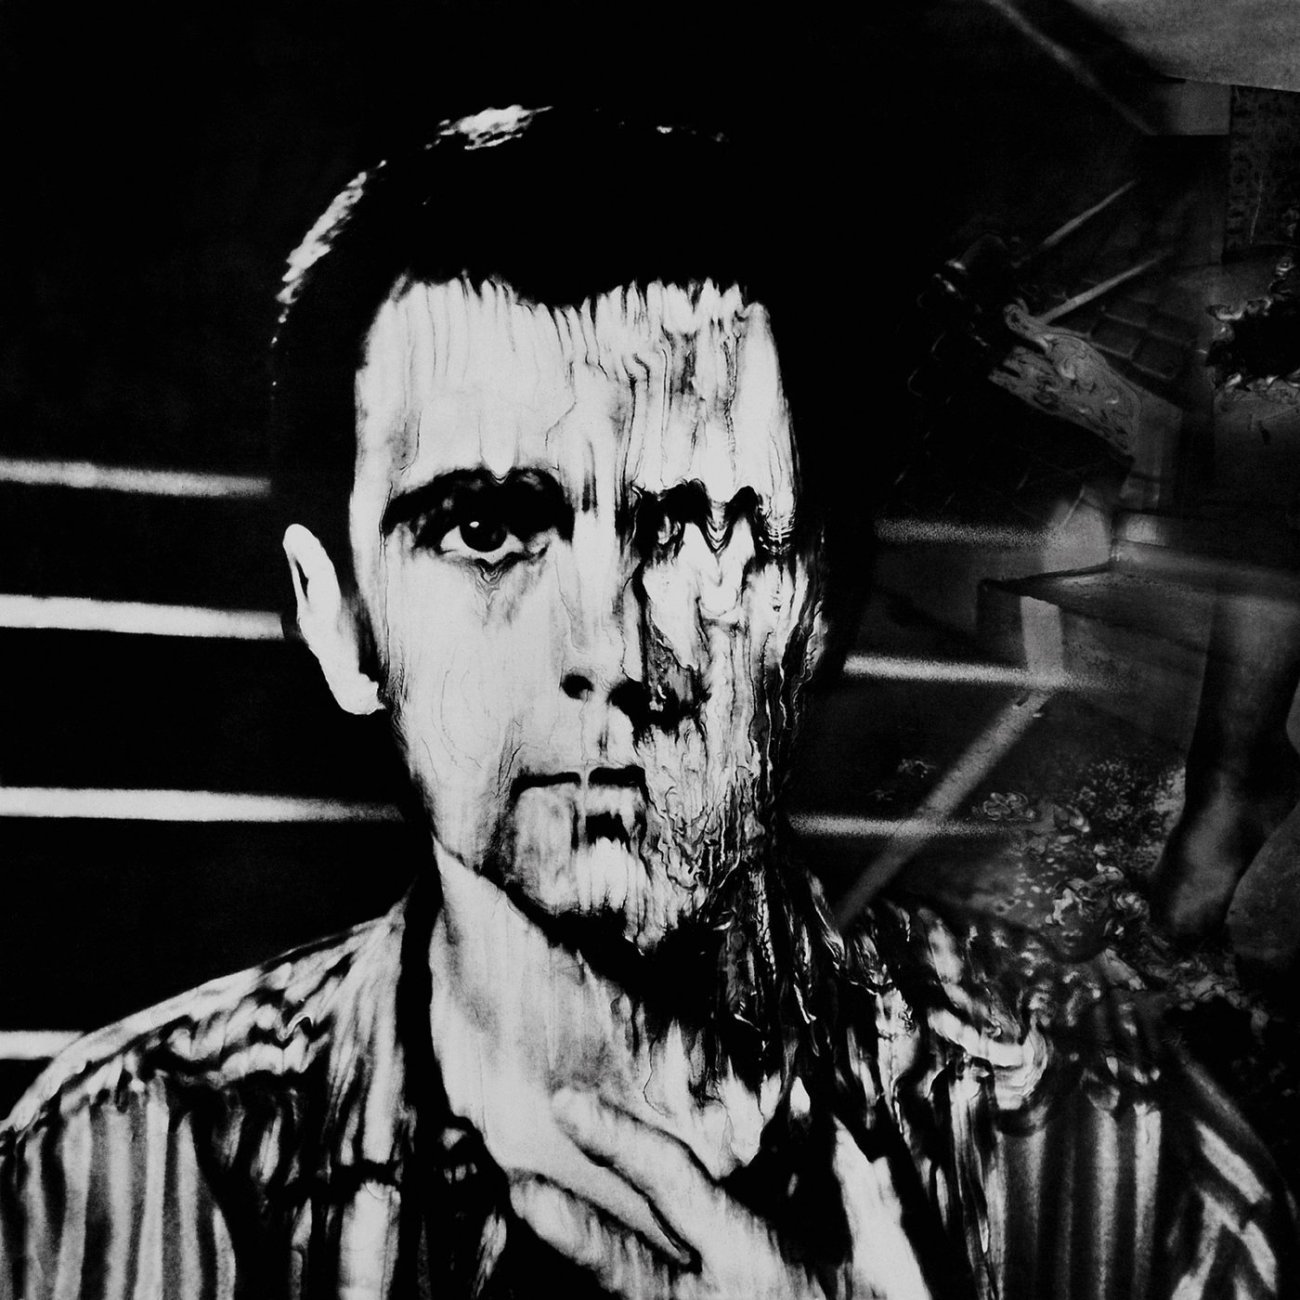 Peter Gabriel > Third Album (Melt)